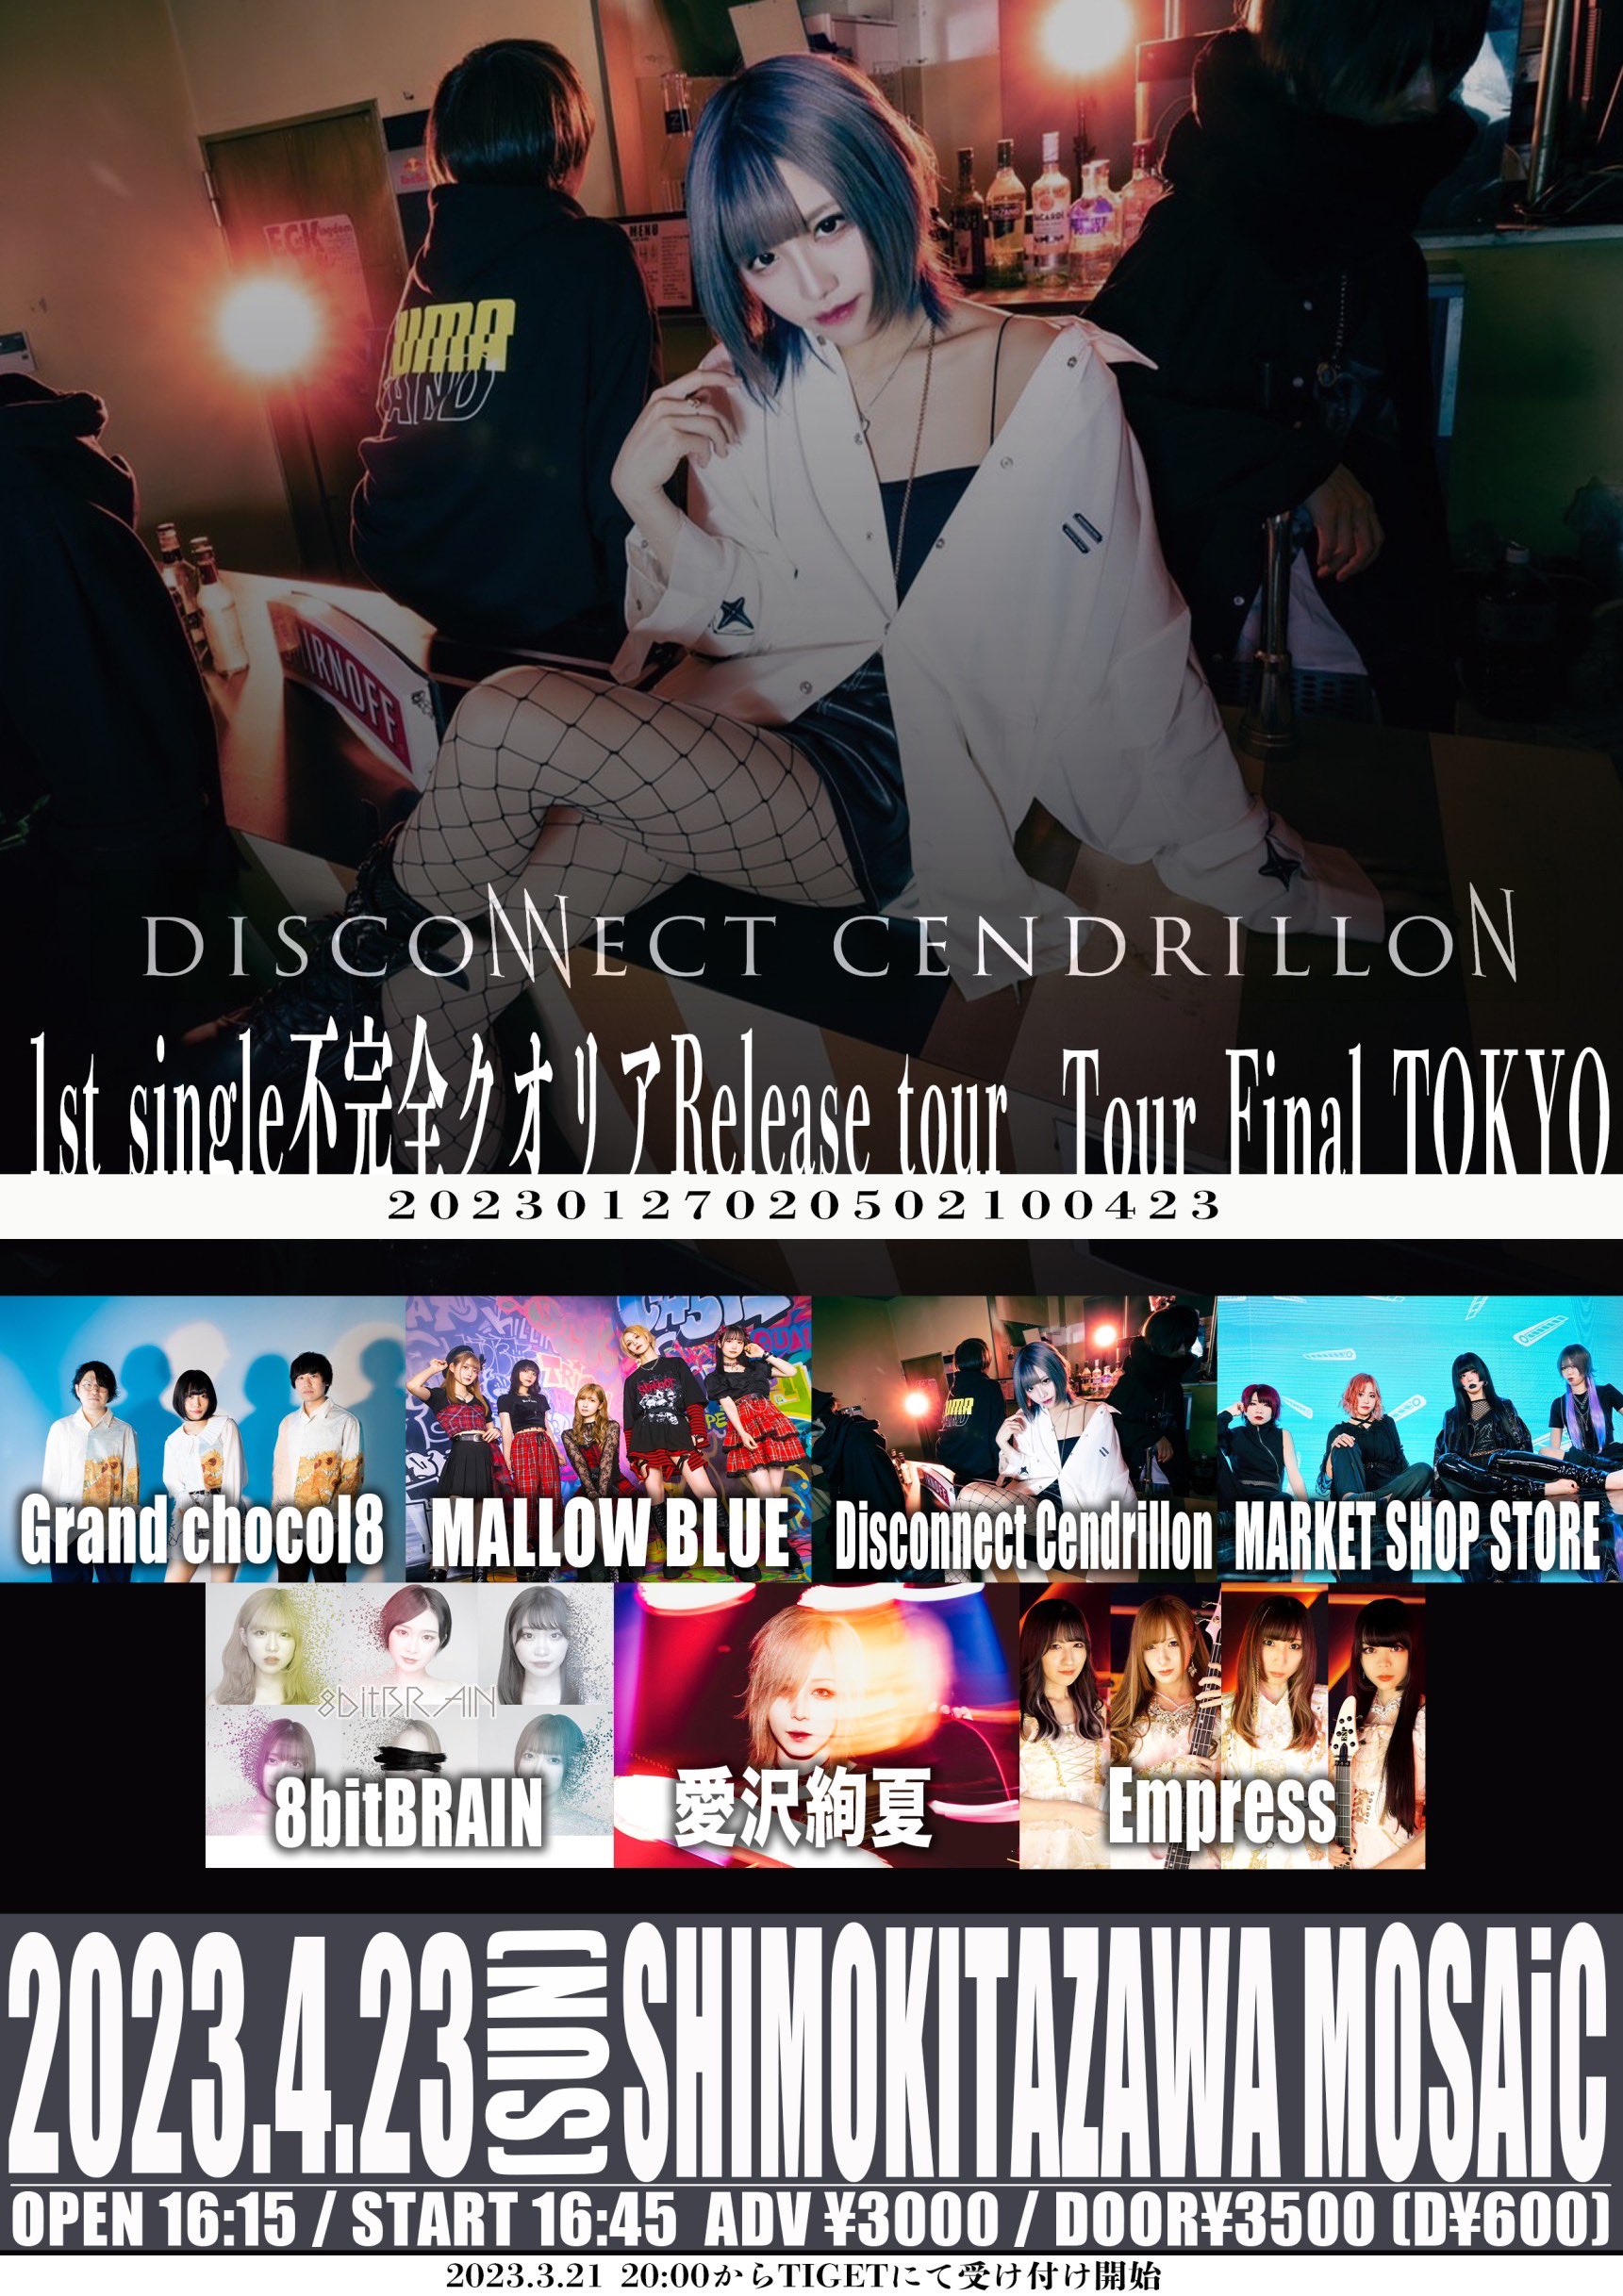 星井あおサポート出演公演(MALLOW BLUE)『Disconnect Cendrillon  1st single”不完全クオリア”Release tour.  – Tour Final TOKYO -』